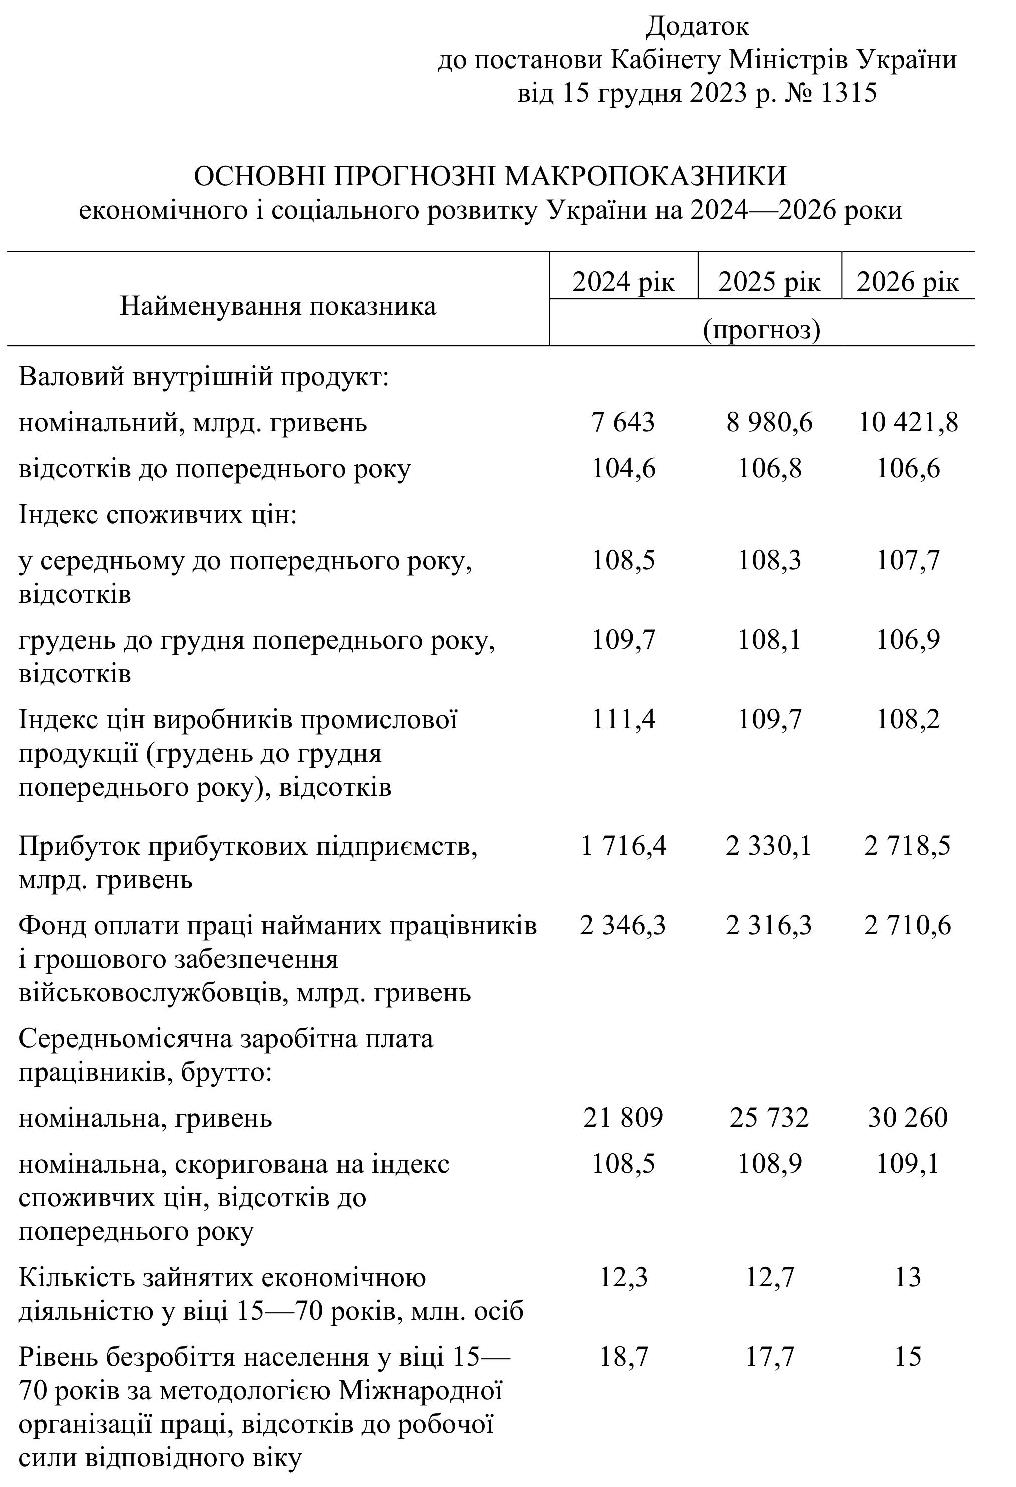 Зарплата українців зростатиме у наступні три роки: прогноз уряду